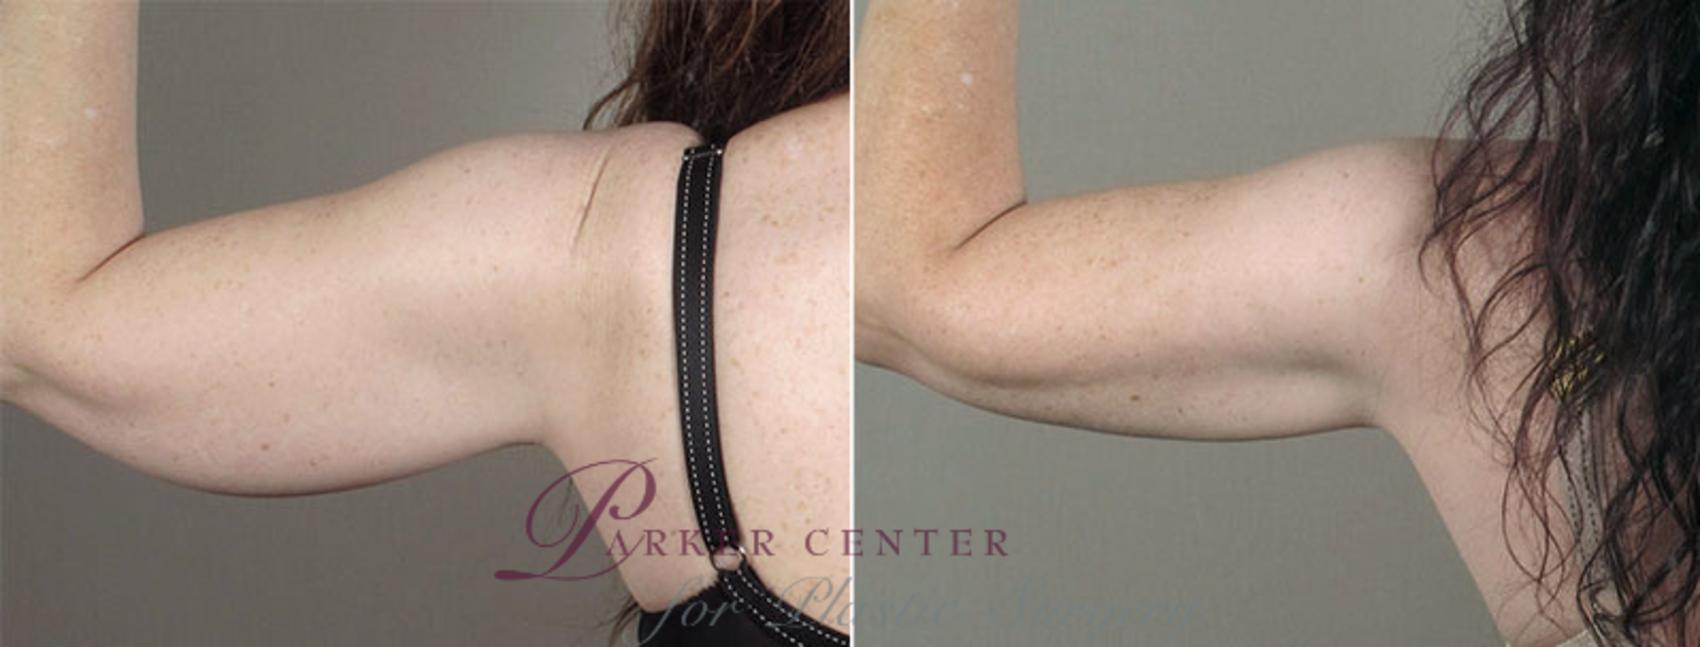 Upper Arm Rejuvenation Case 831 Before & After View #3 | Paramus, NJ | Parker Center for Plastic Surgery